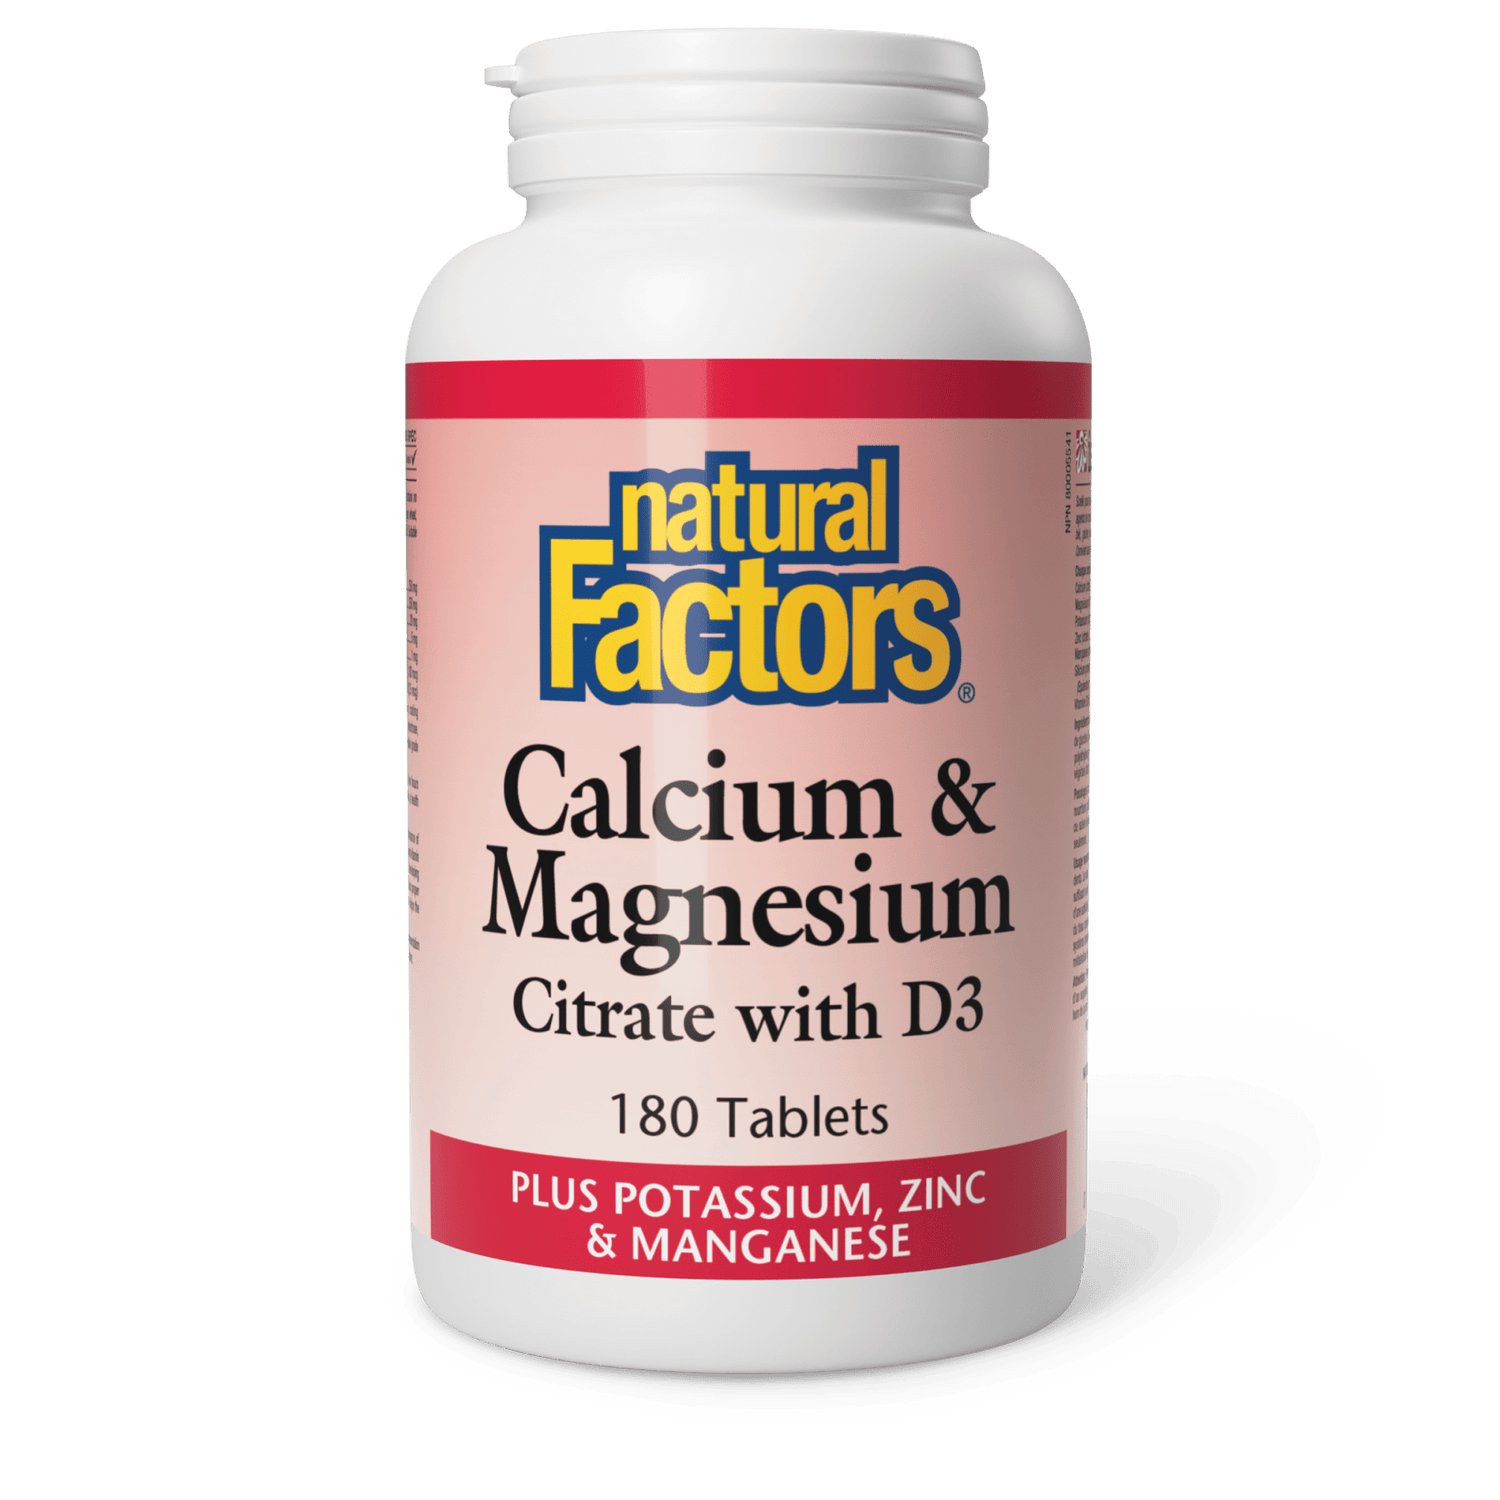 Calcium & Magnesium Citrate with D3 Plus Potassium, Zinc & Manganese, Natural Factors|v|image|1608